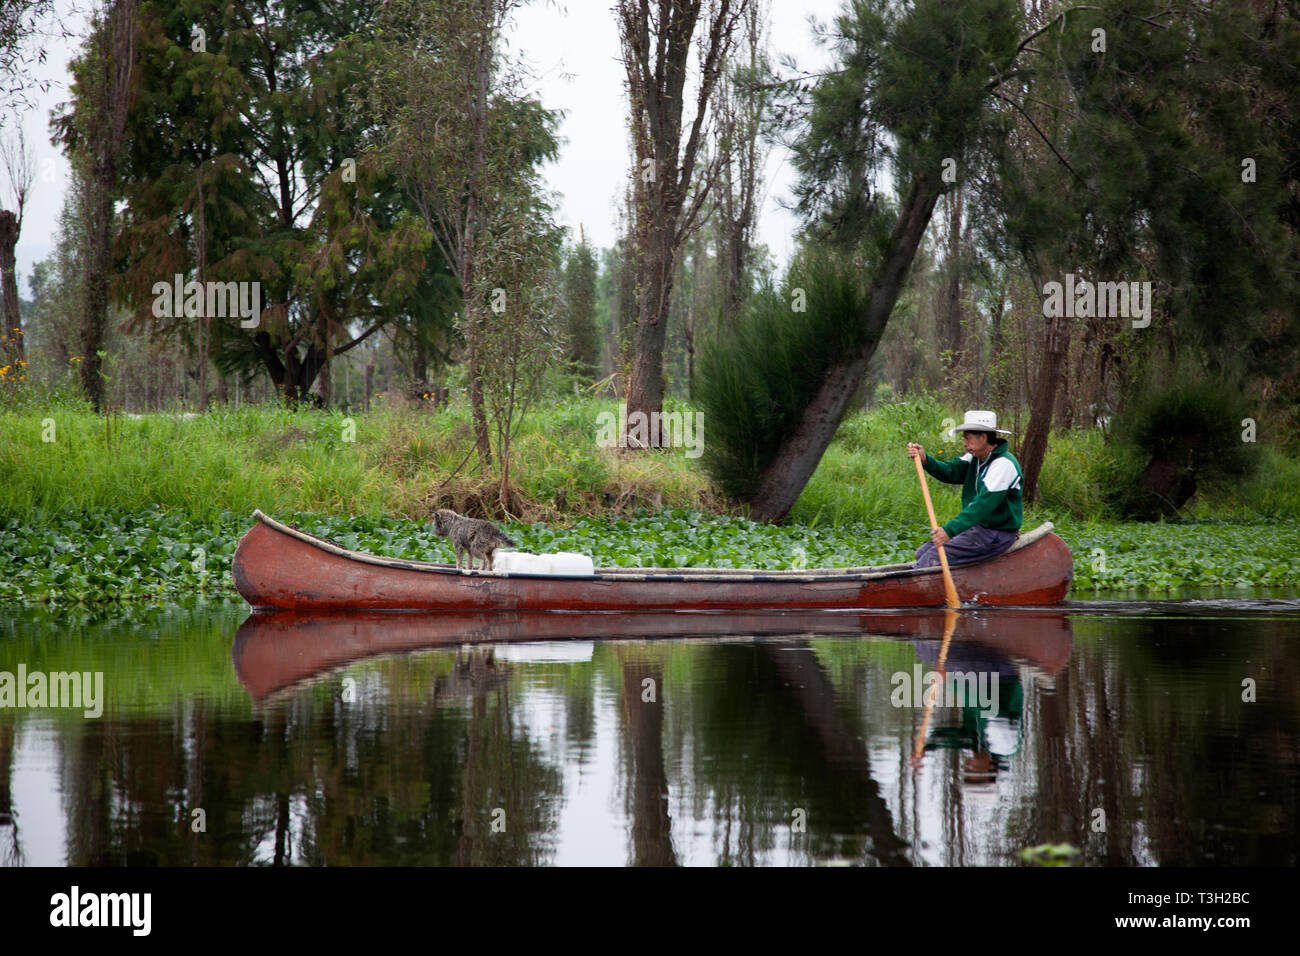 Ein Landwirt Paddel Kanu in der chinampas von Xochimilco, Pre-hispanic Farming System von den Azteken, die immer noch in Mexico City vorhanden. Stockfoto